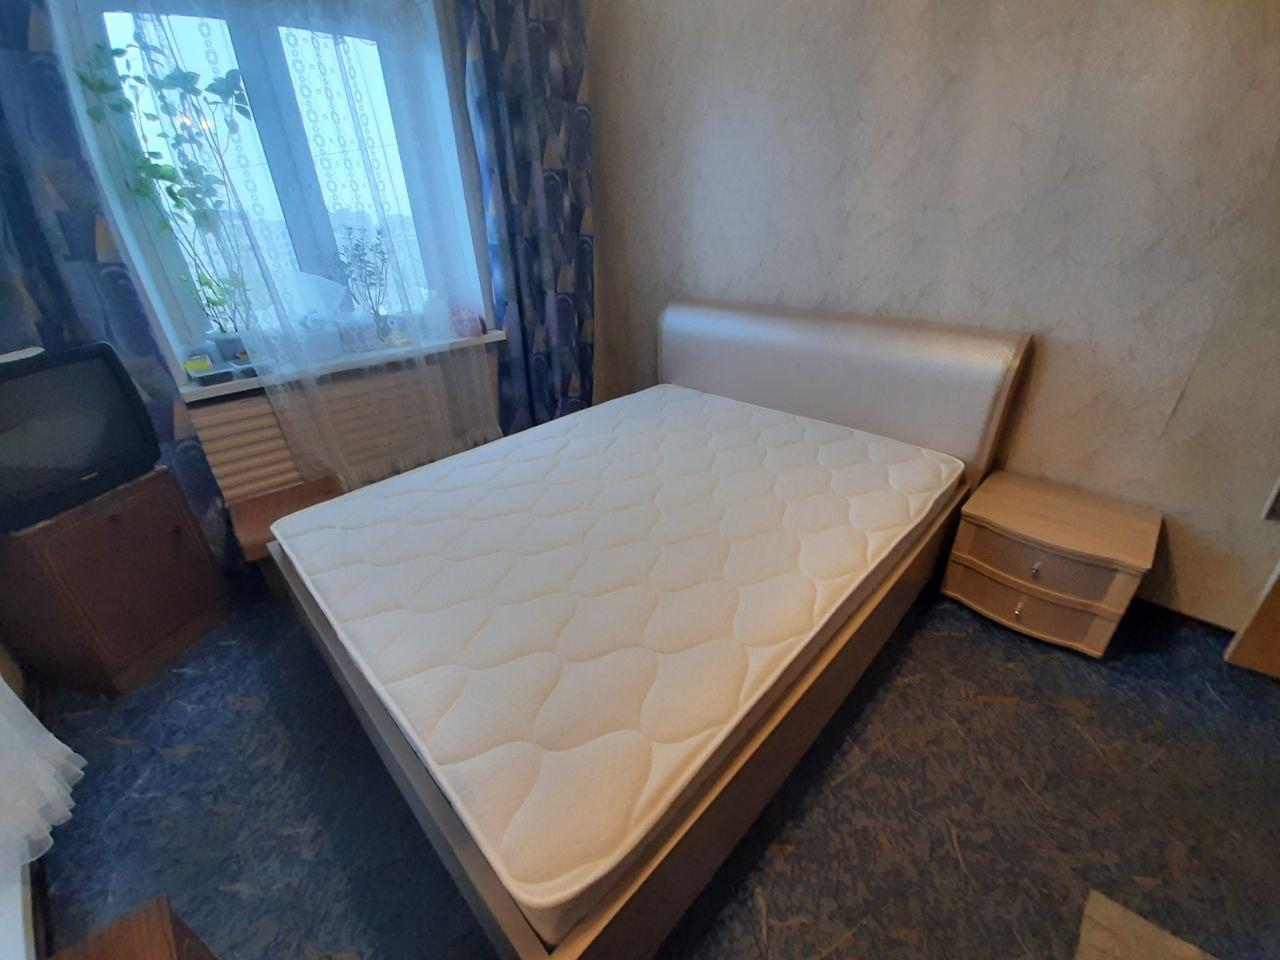 Двуспальная кровать "Барселона" 160 х 200 с подъемным механизмом цвет венге / punto 19660